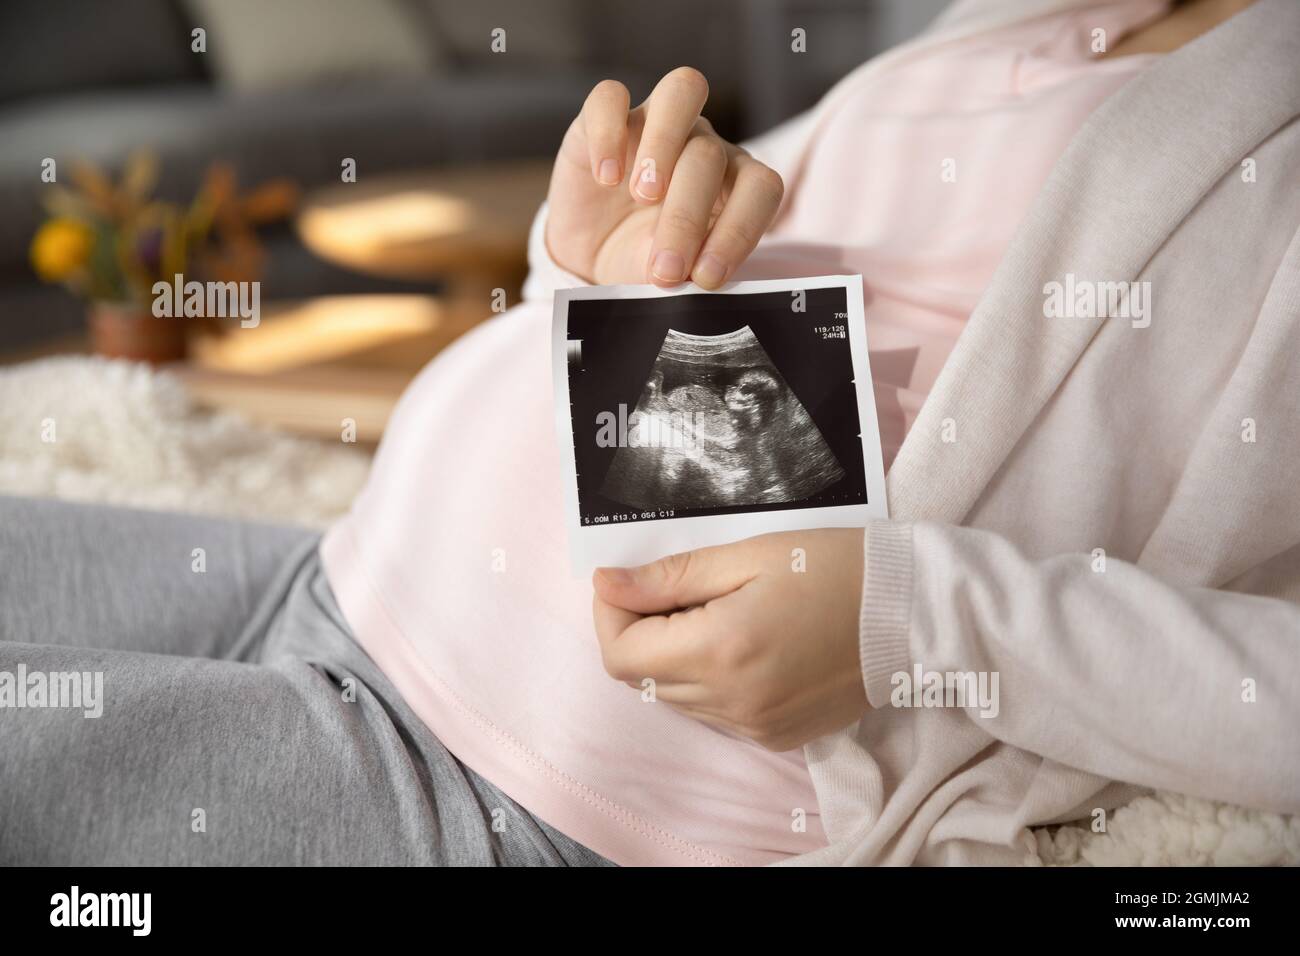 La giovane donna che si aspetta il bambino tiene l'immagine del sonogramma del bambino futuro Foto Stock